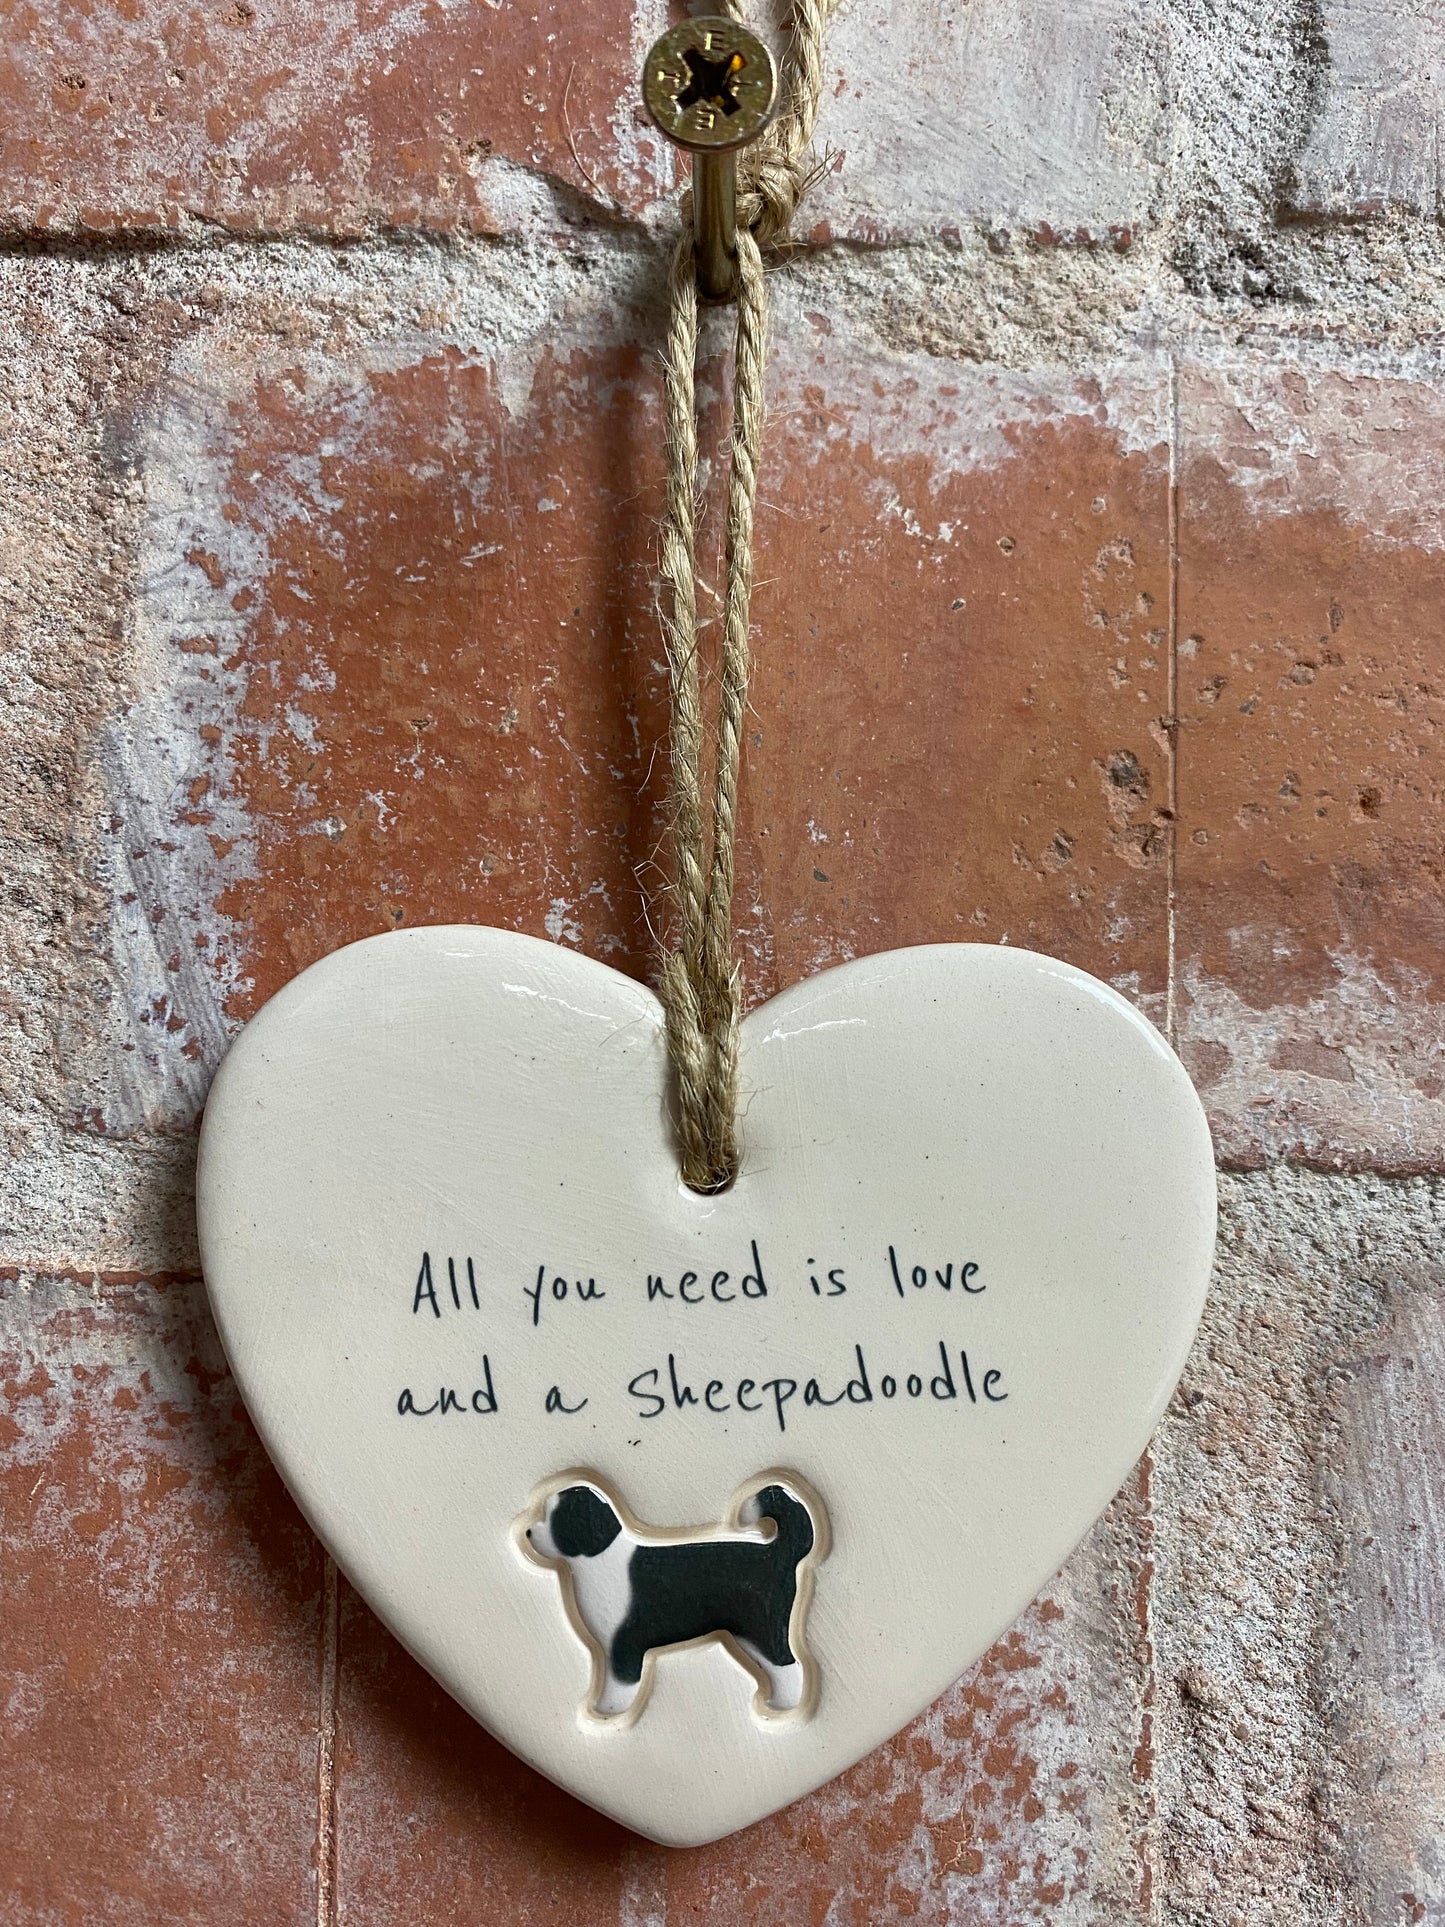 Sheepadoodle ceramic heart